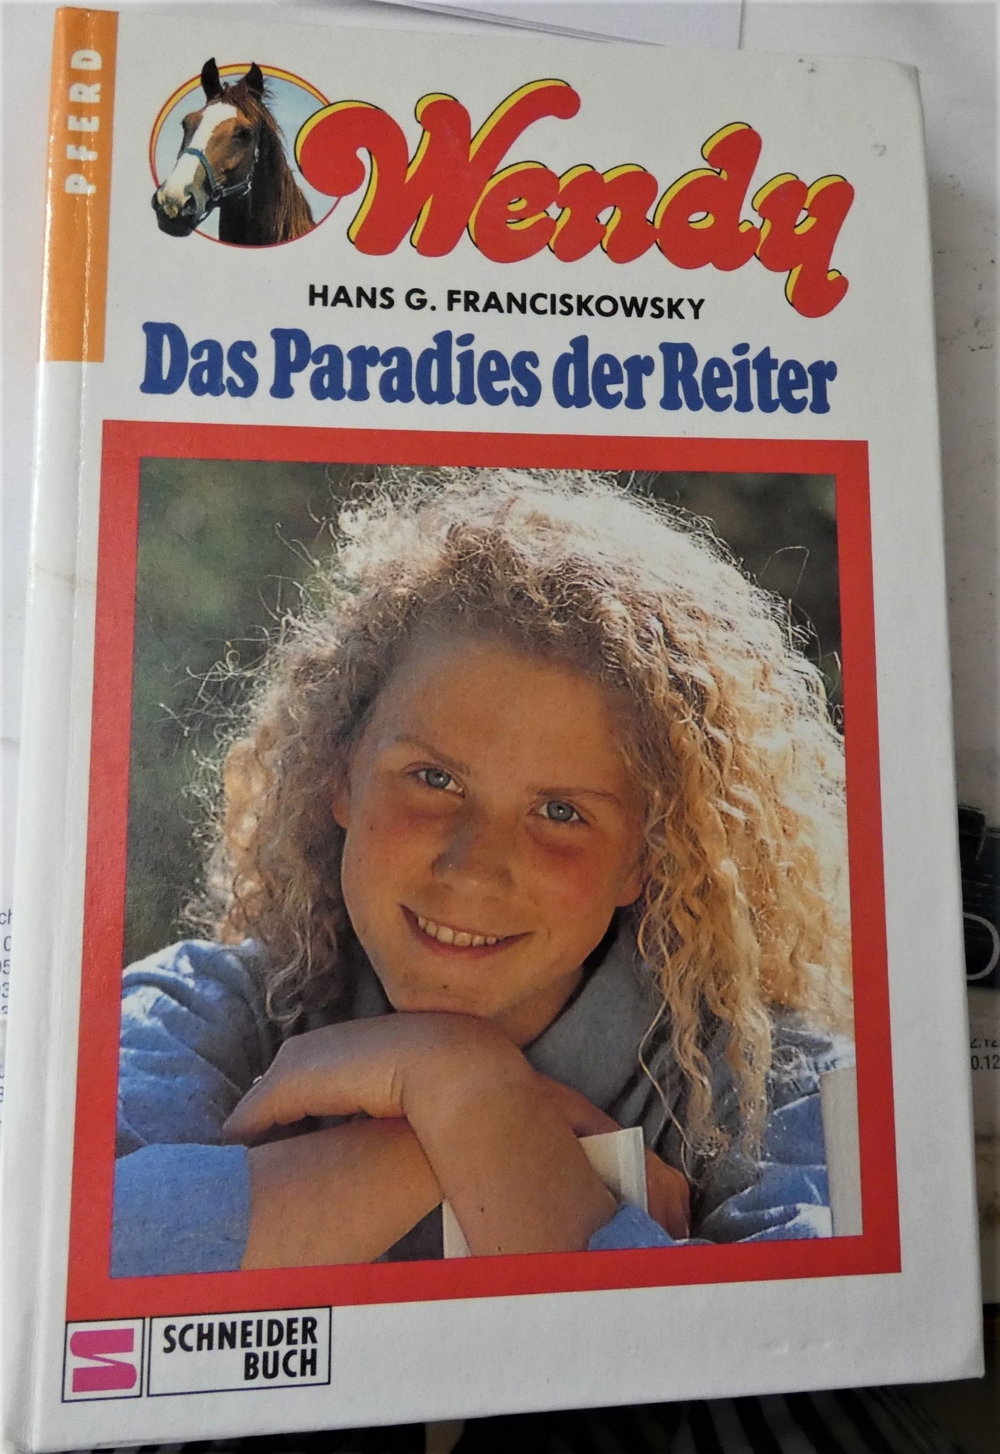 Wendy - Das Paradies der Reiter - Hans G. Franciskowsky - ISBN 3-505-04443-1